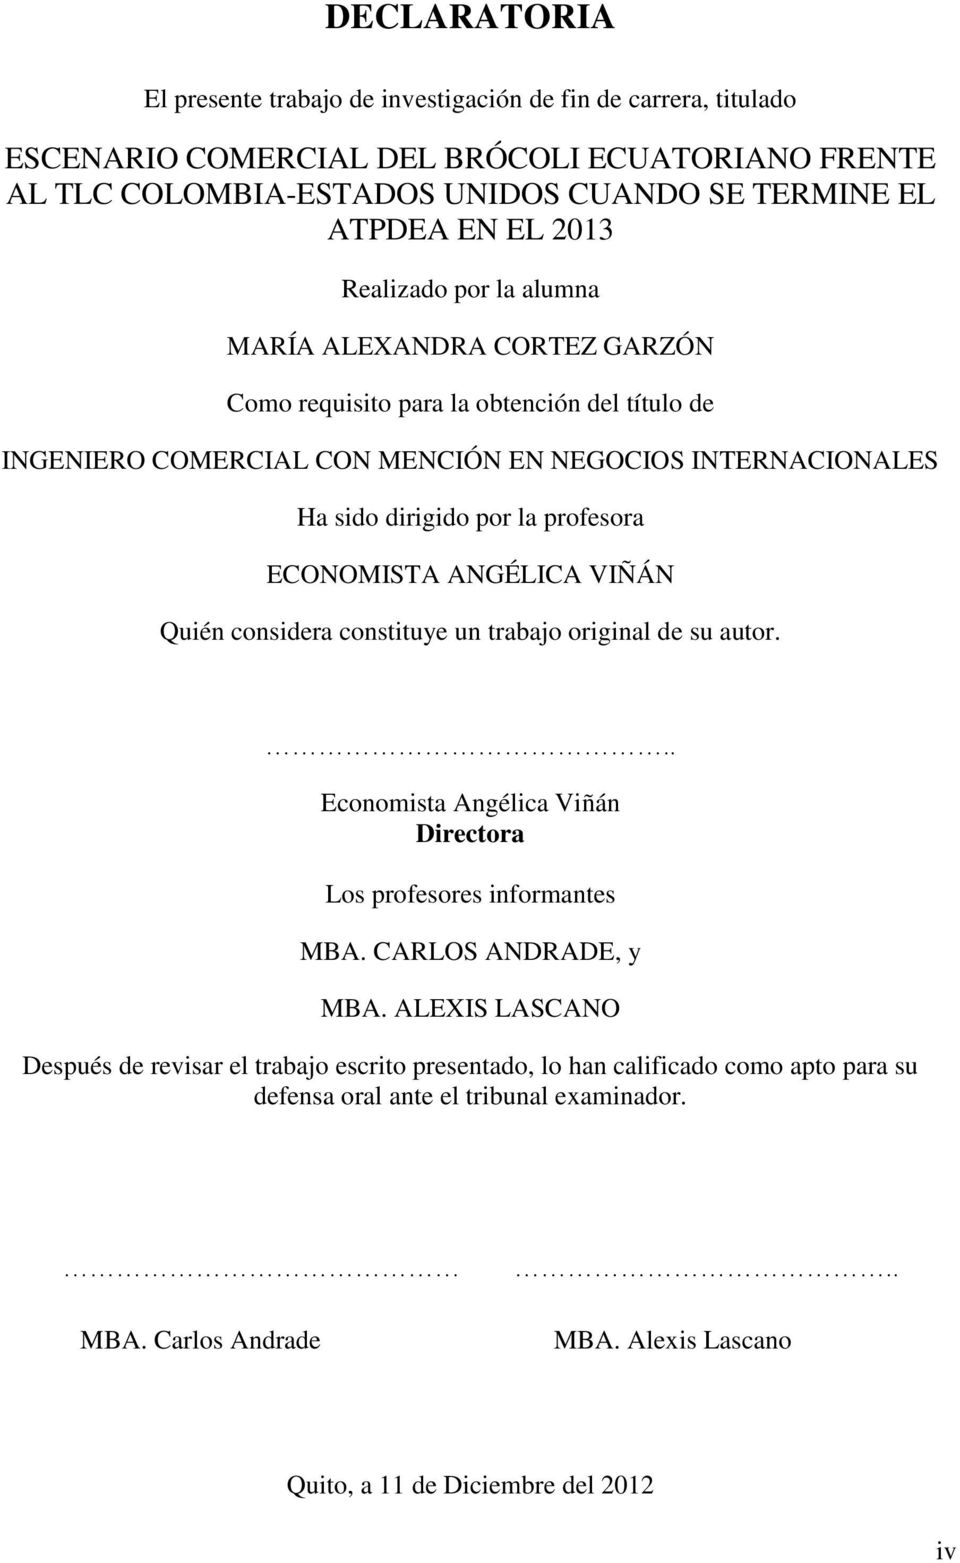 ECONOMISTA ANGÉLICA VIÑÁN Quién considera constituye un trabajo original de su autor... Economista Angélica Viñán Directora Los profesores informantes MBA. CARLOS ANDRADE, y MBA.